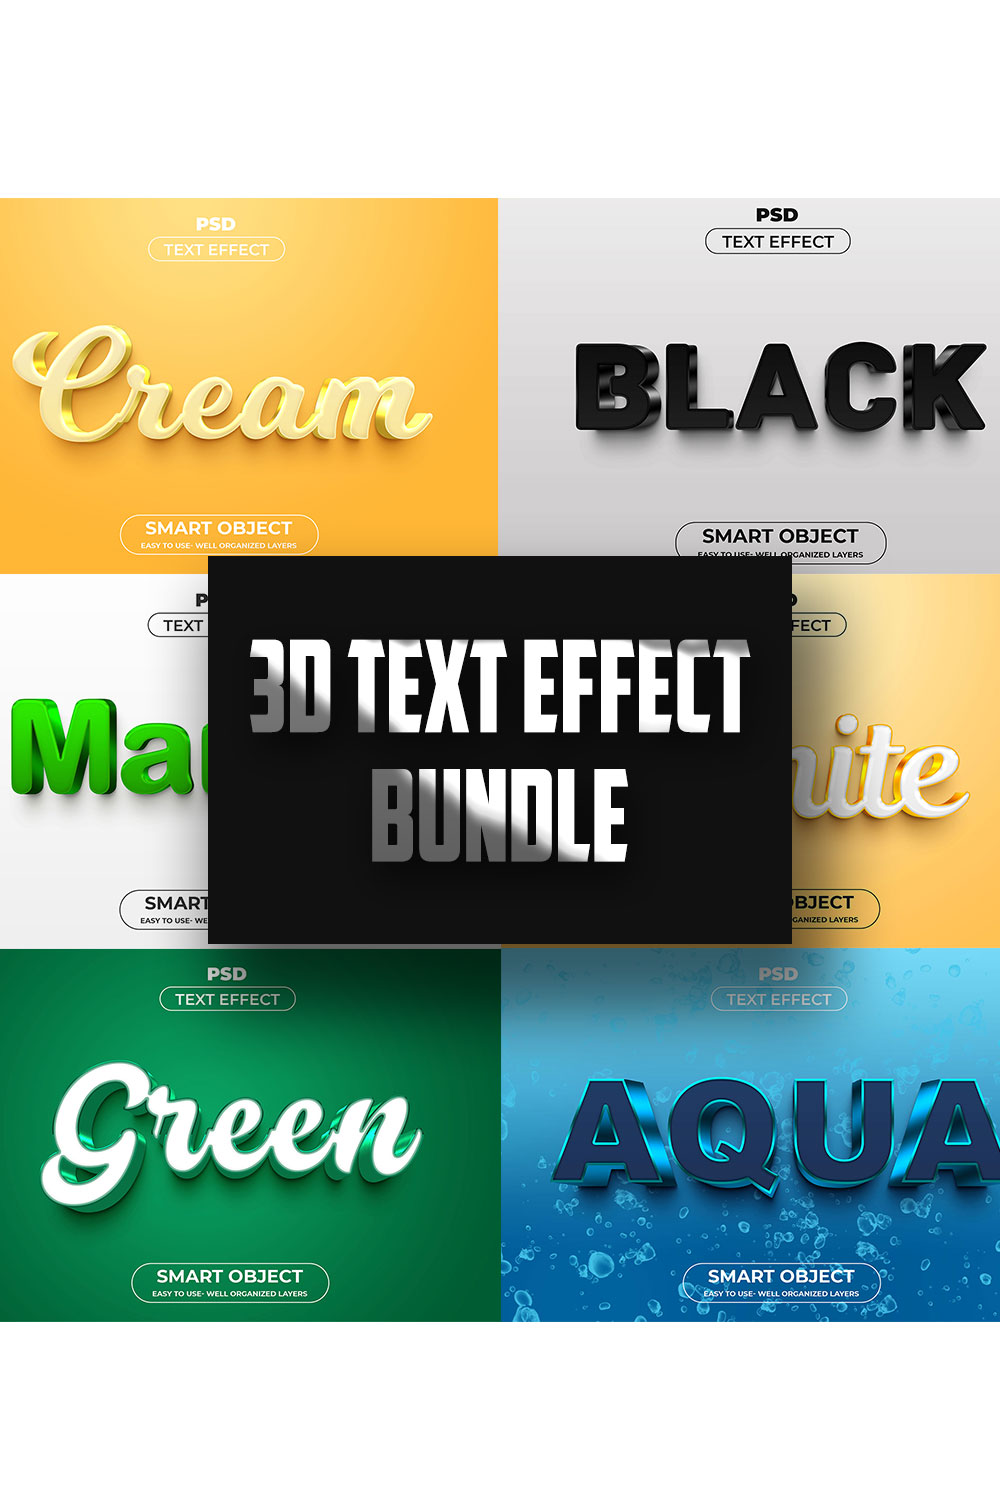 3D Text Effect Style Template Bundle pinterest image.